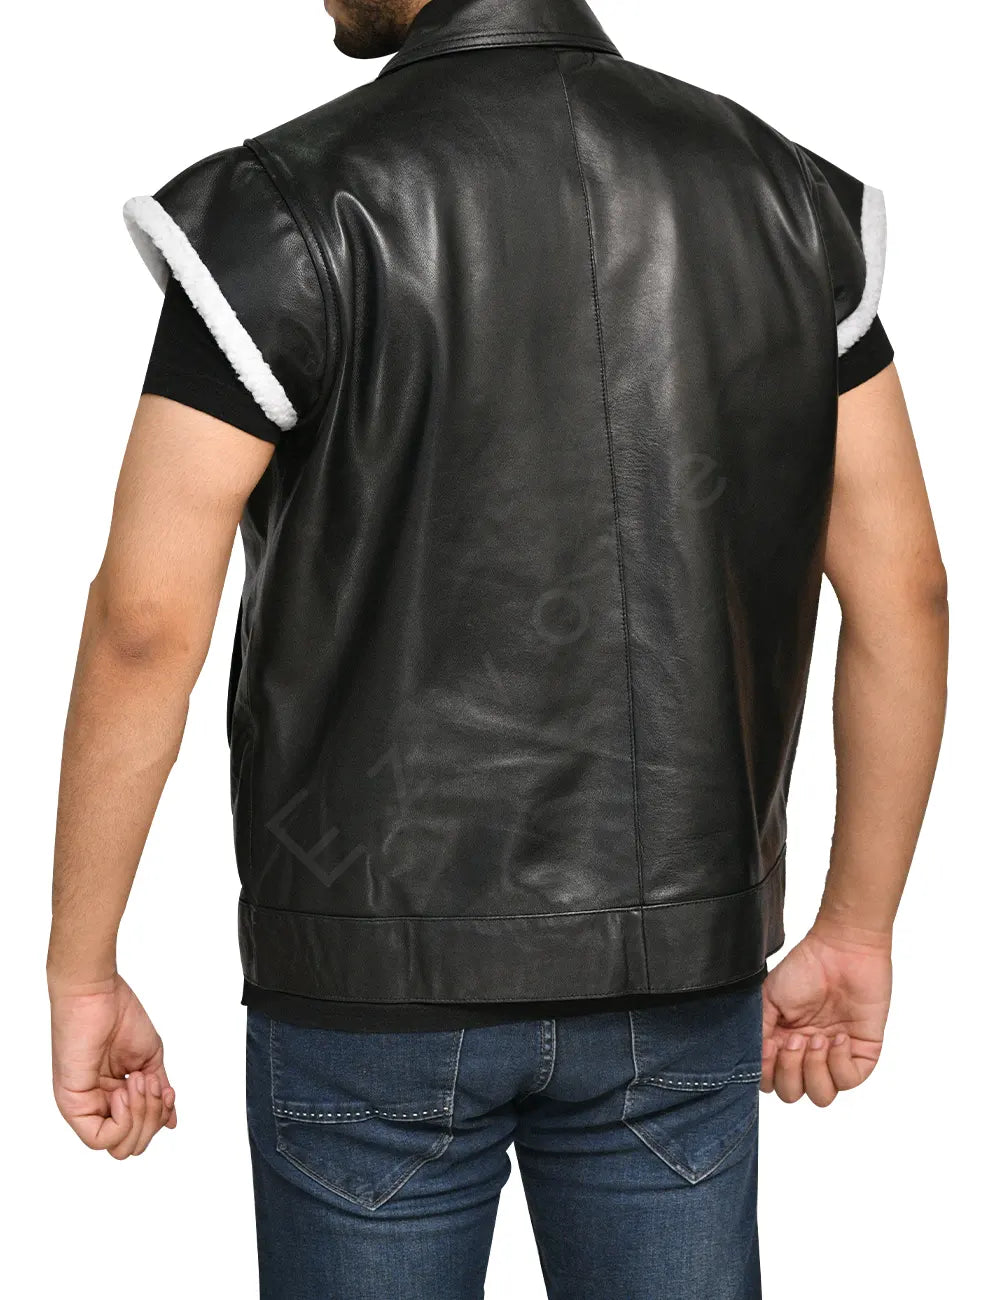 Mens Biker Leather Vest